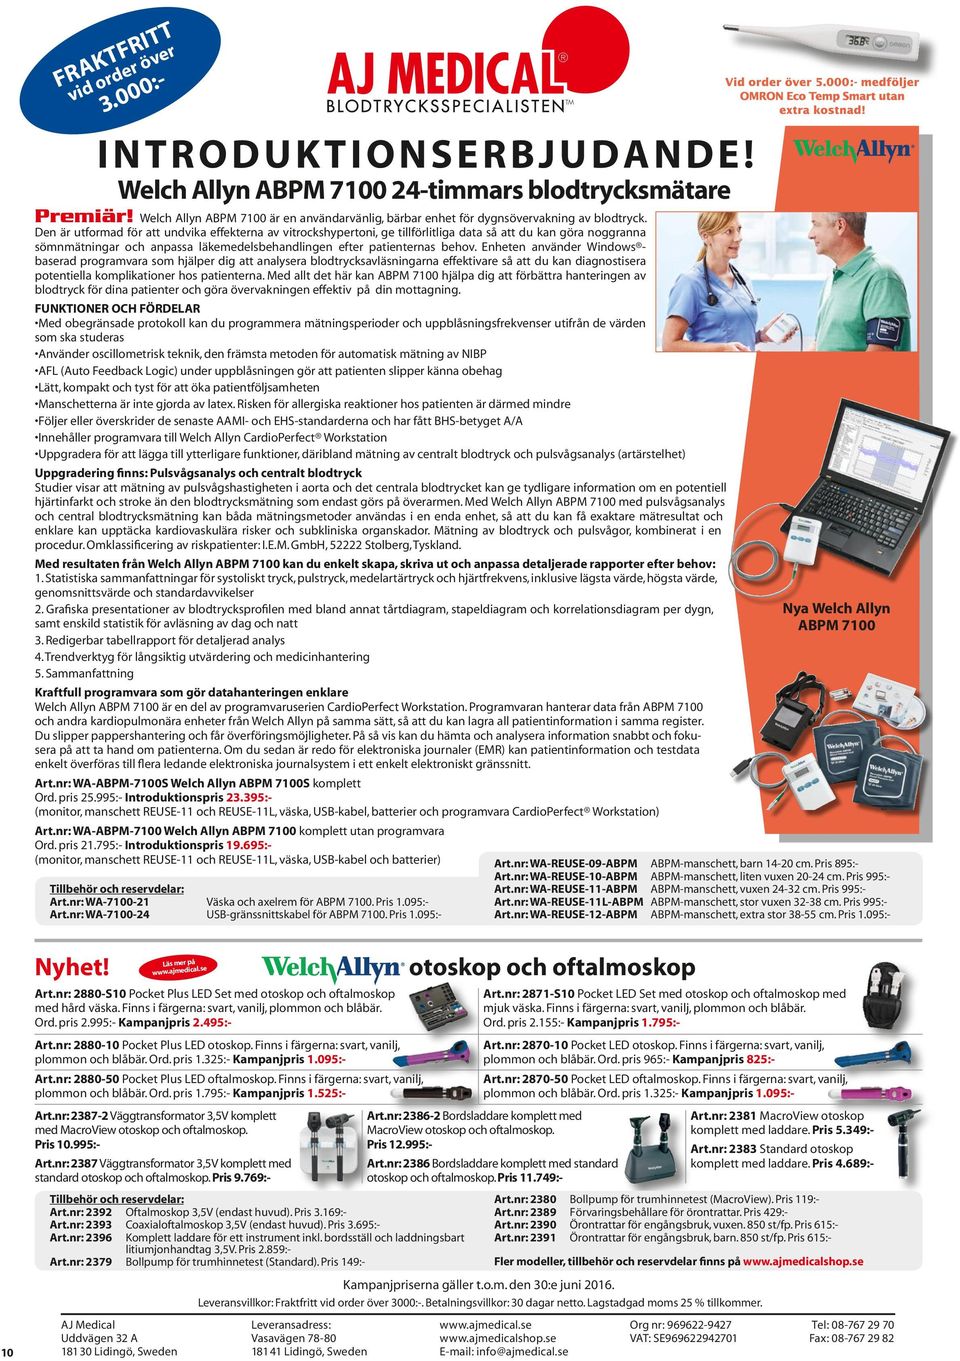 Welch Allyn ABPM 7100 är en användarvänlig, bärbar enhet för dygnsövervakning av blodtryck.